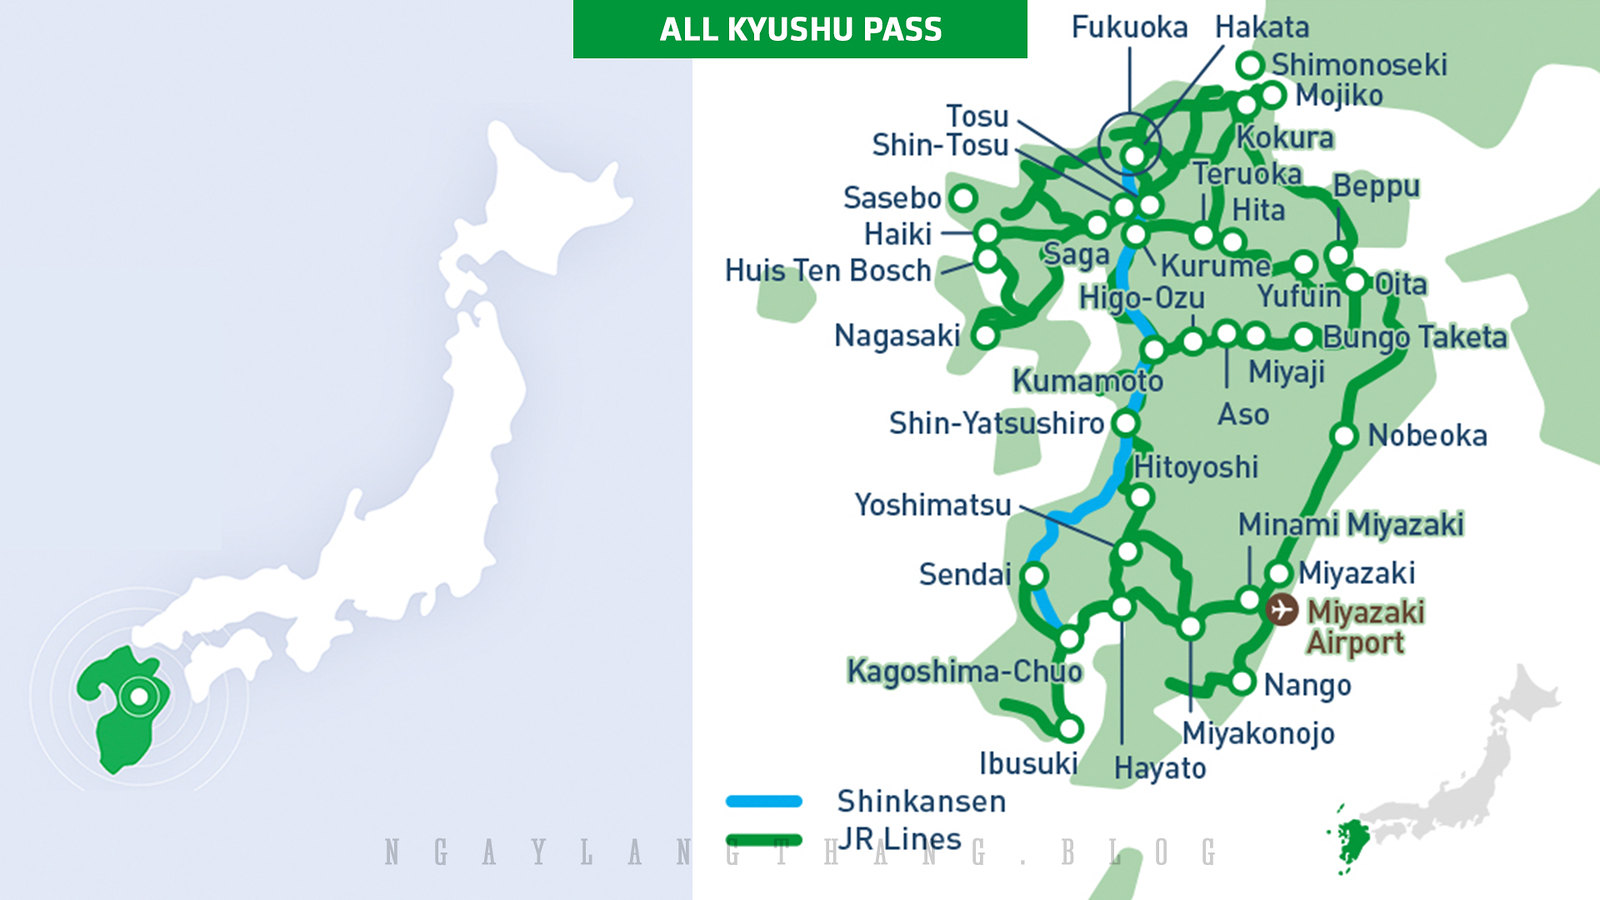 All Kyushu Area Pass-ngaylangthang